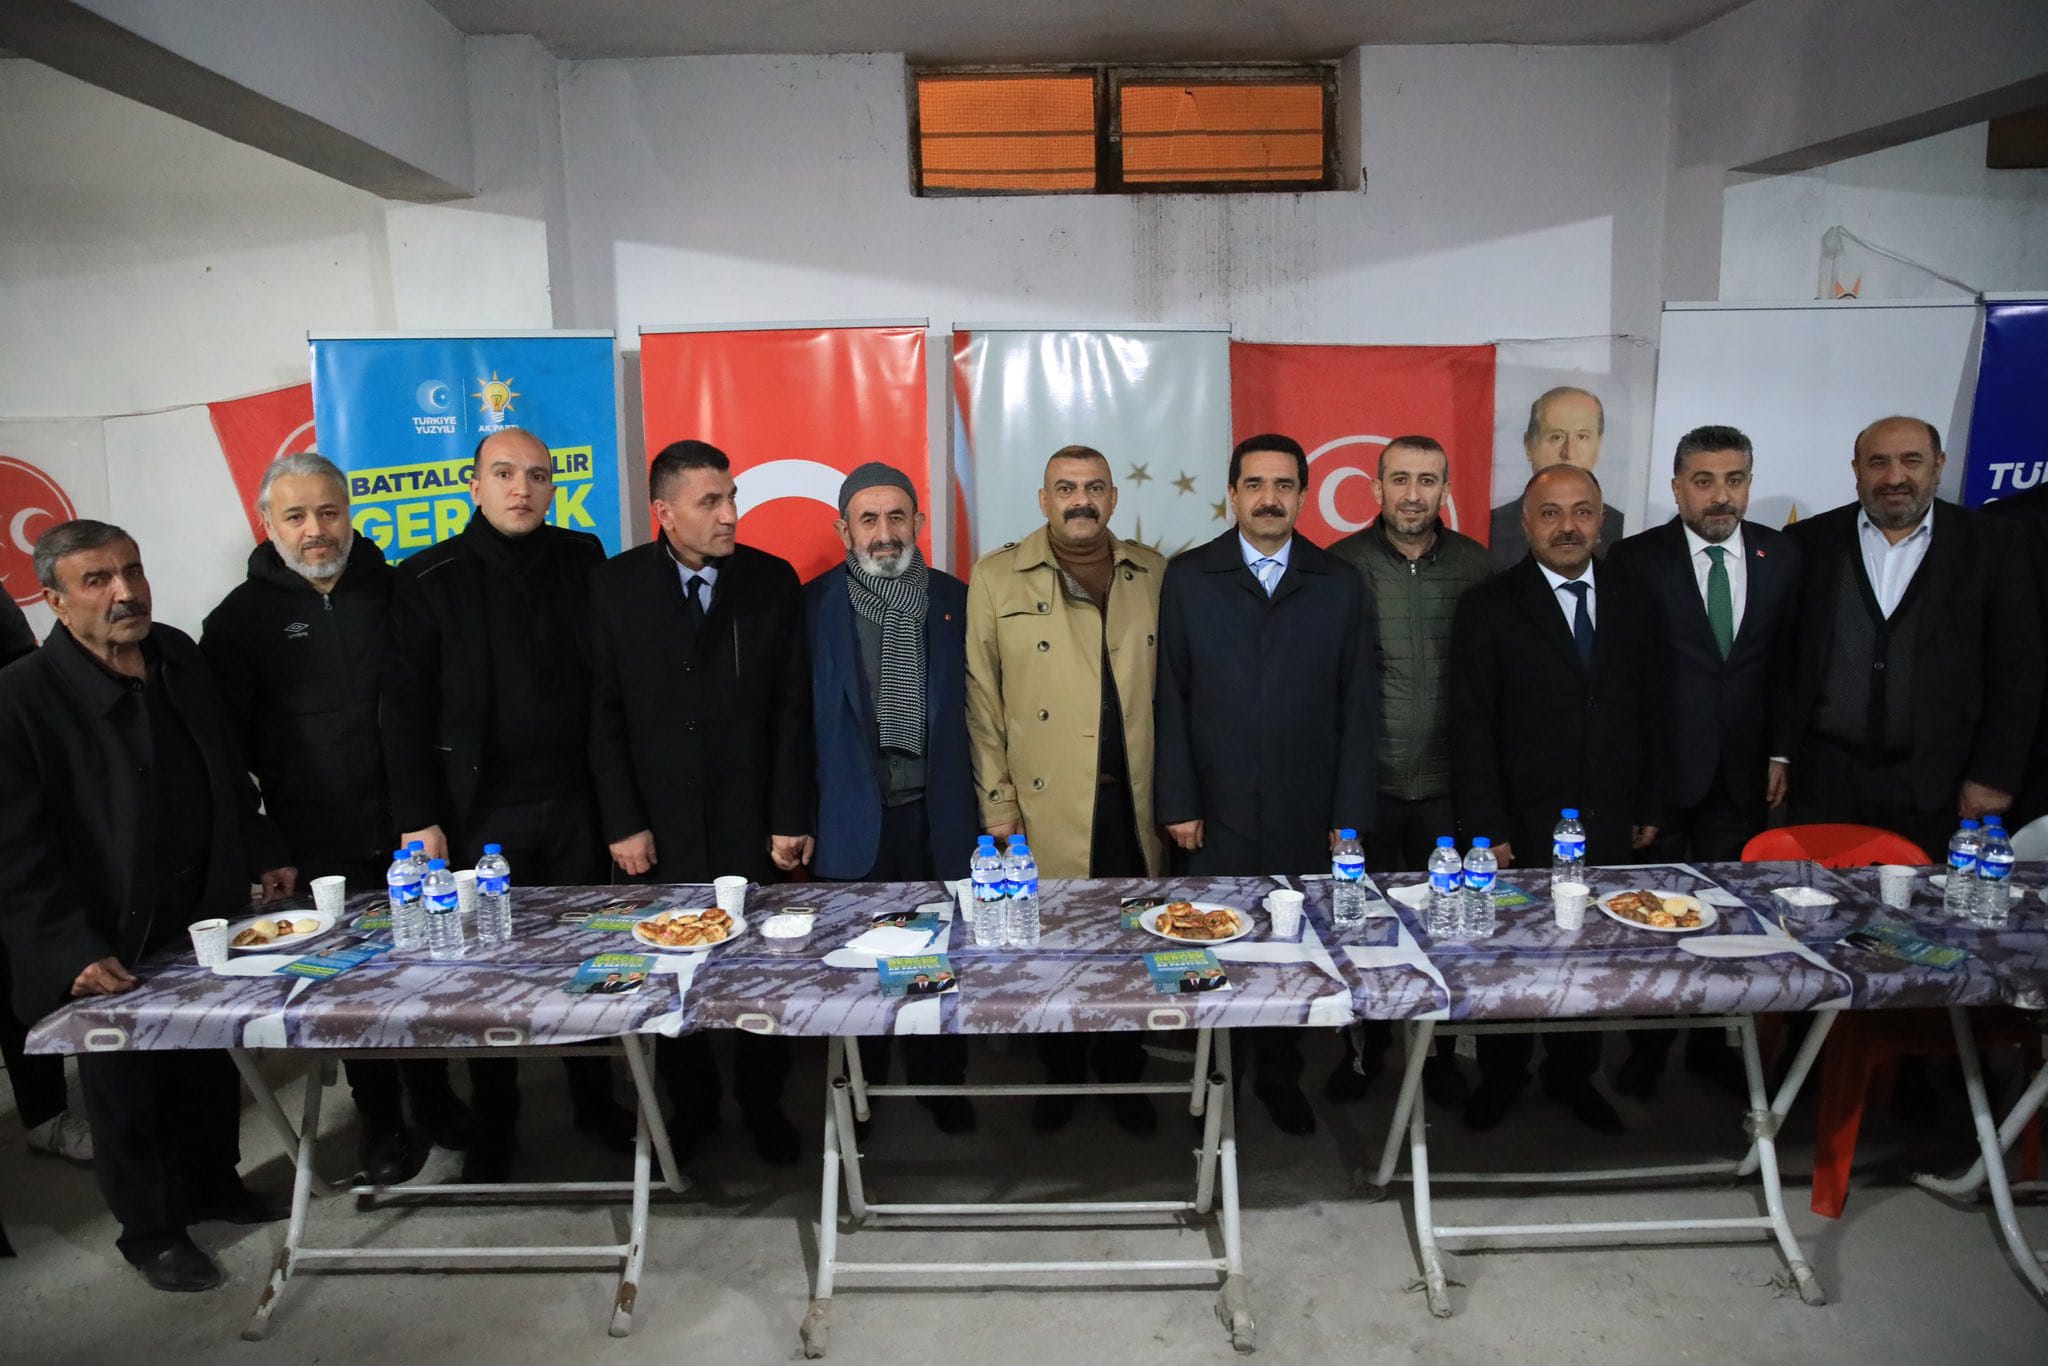 AK Parti Battalgazi Belediye Başkan Adayı Taşkın: “Hizmetkar Olmaya Geliyoruz”